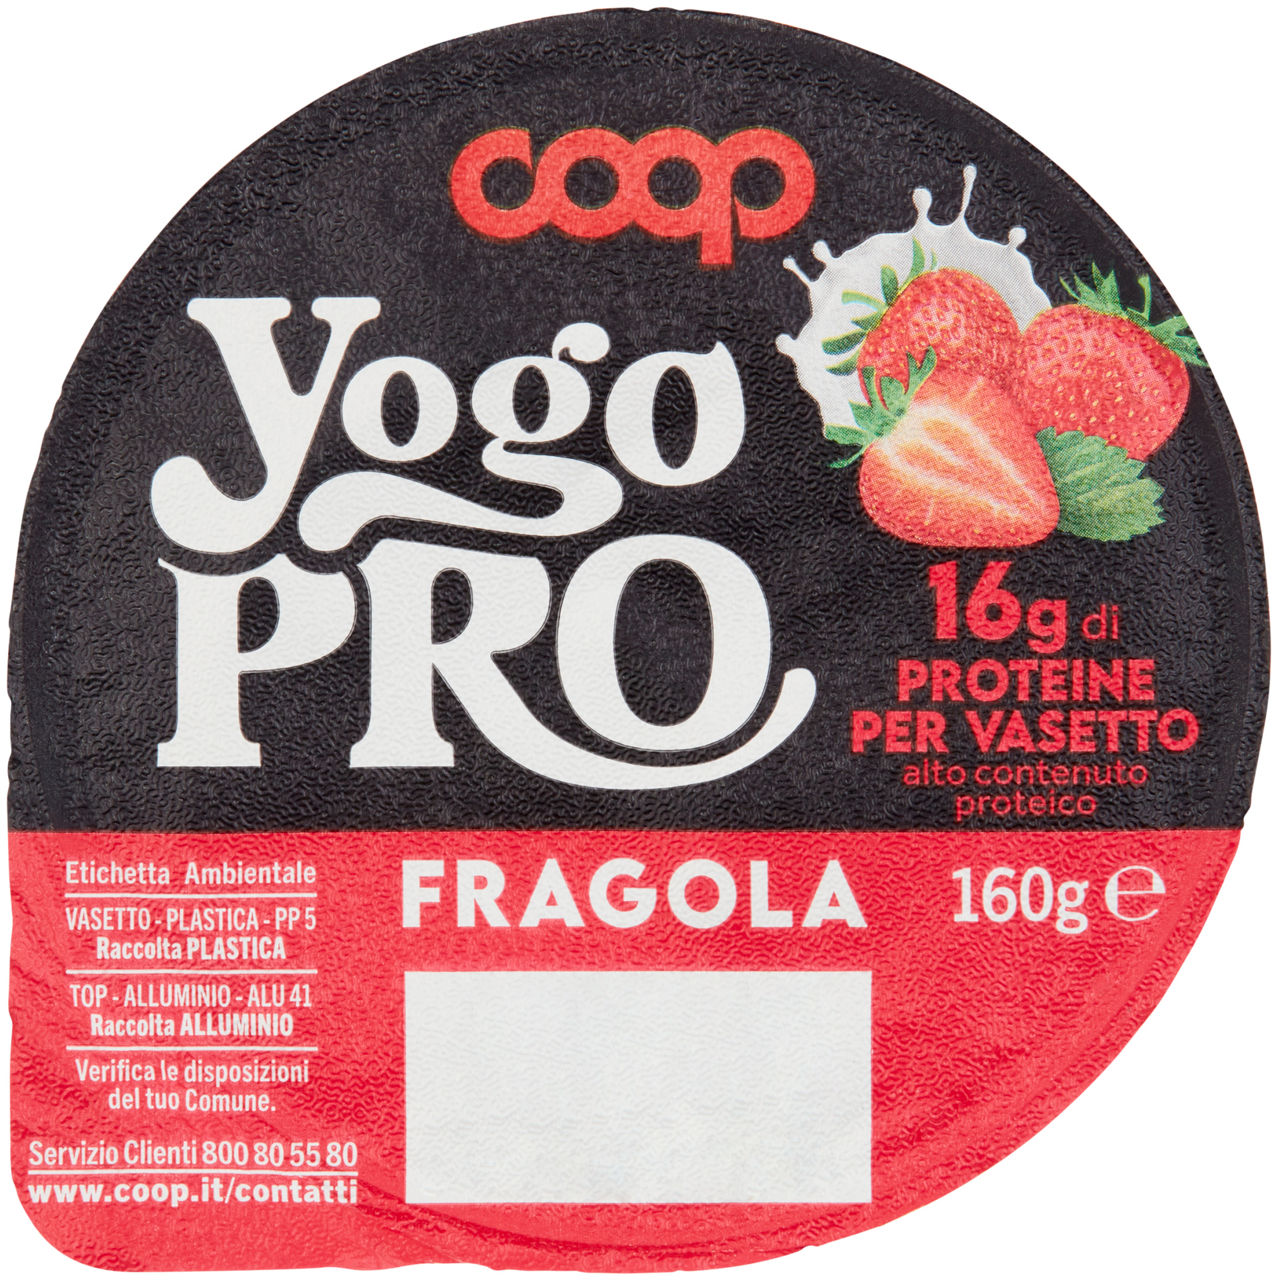 Yogurt proteico yogo pro al cucchiaio fragola coop g 160